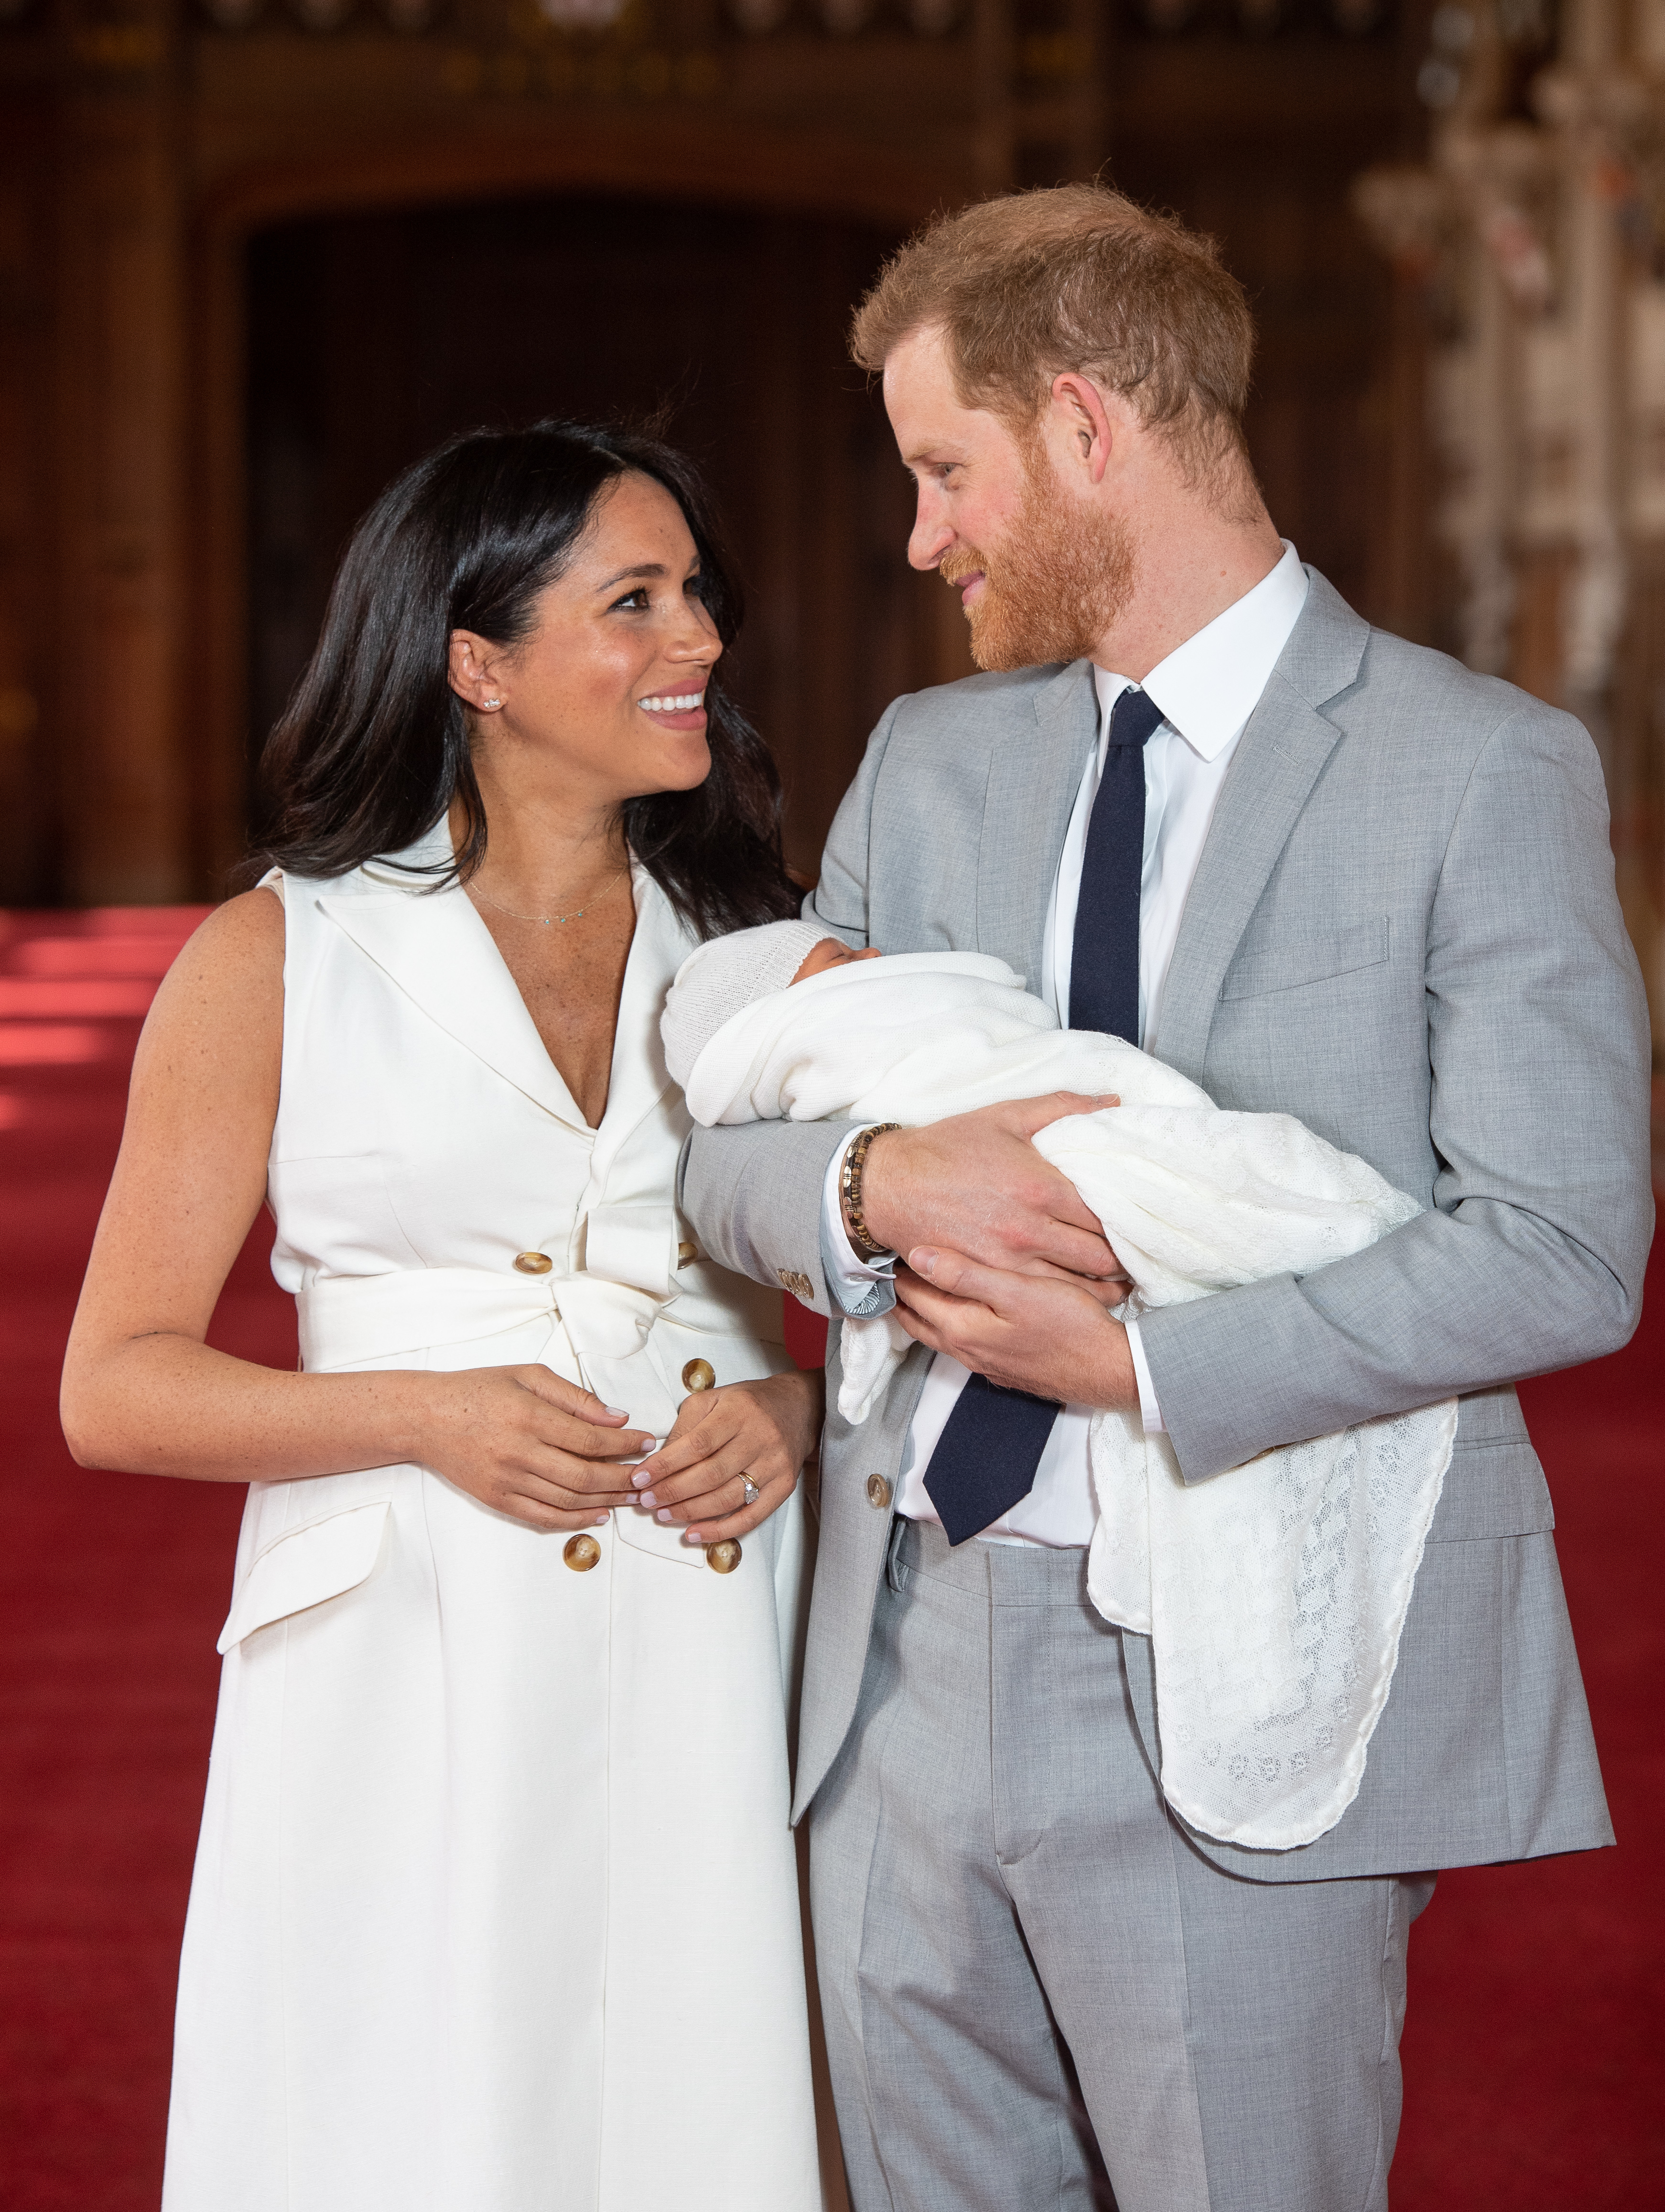 Prinz Harry und Meghan Markle posieren mit dem neugeborenen Archie während eines Fototermins in der St. George's Hall auf Schloss Windsor am 8. Mai 2019 in Windsor, England | Quelle: Getty Images